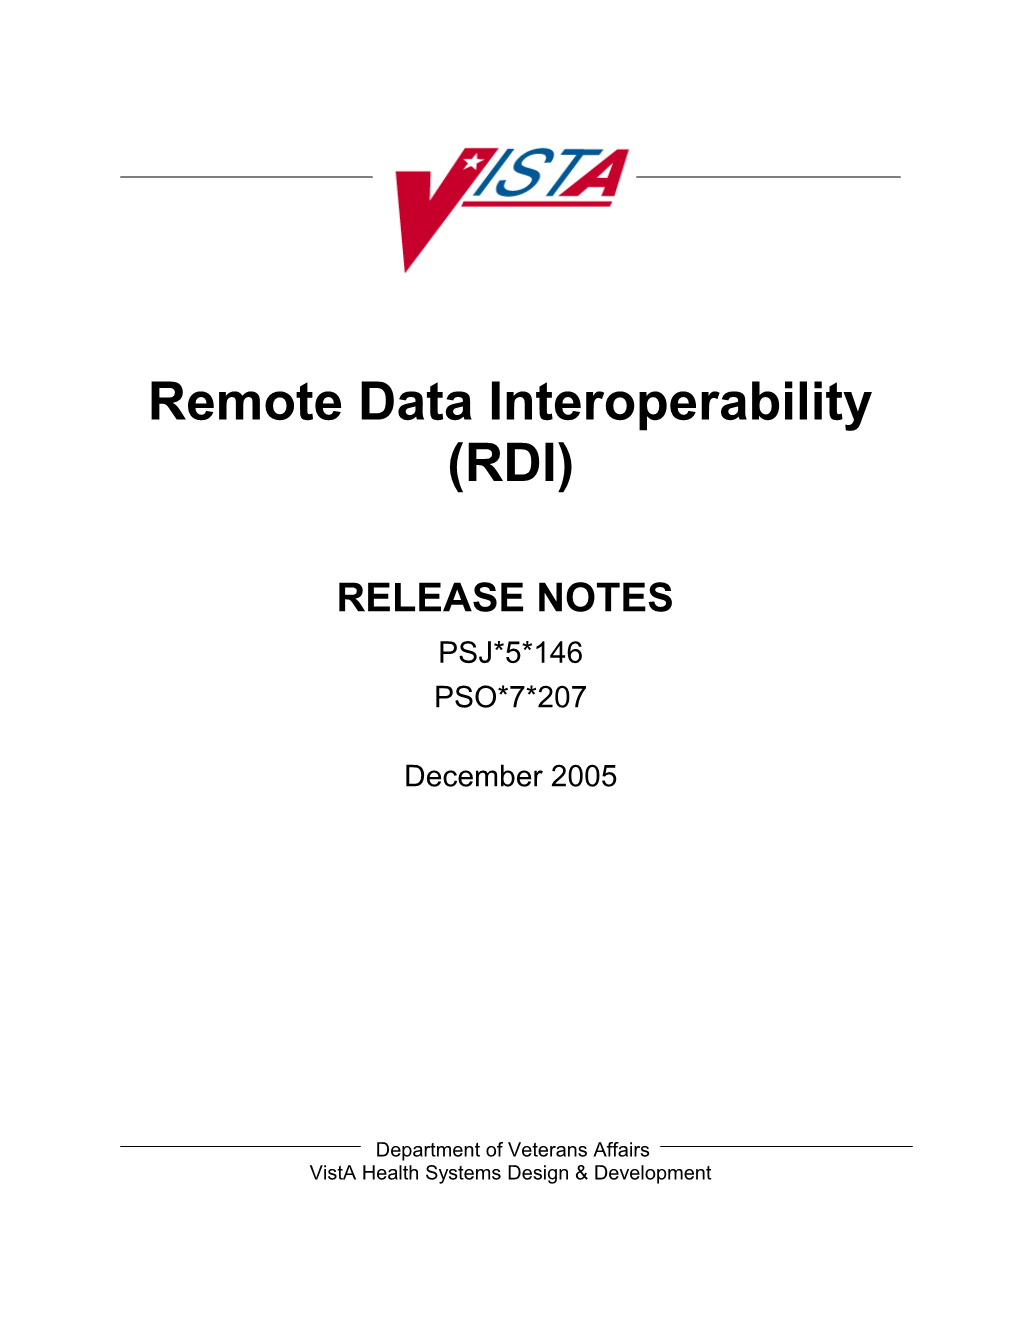 Remote Data Interoperability (RDI)